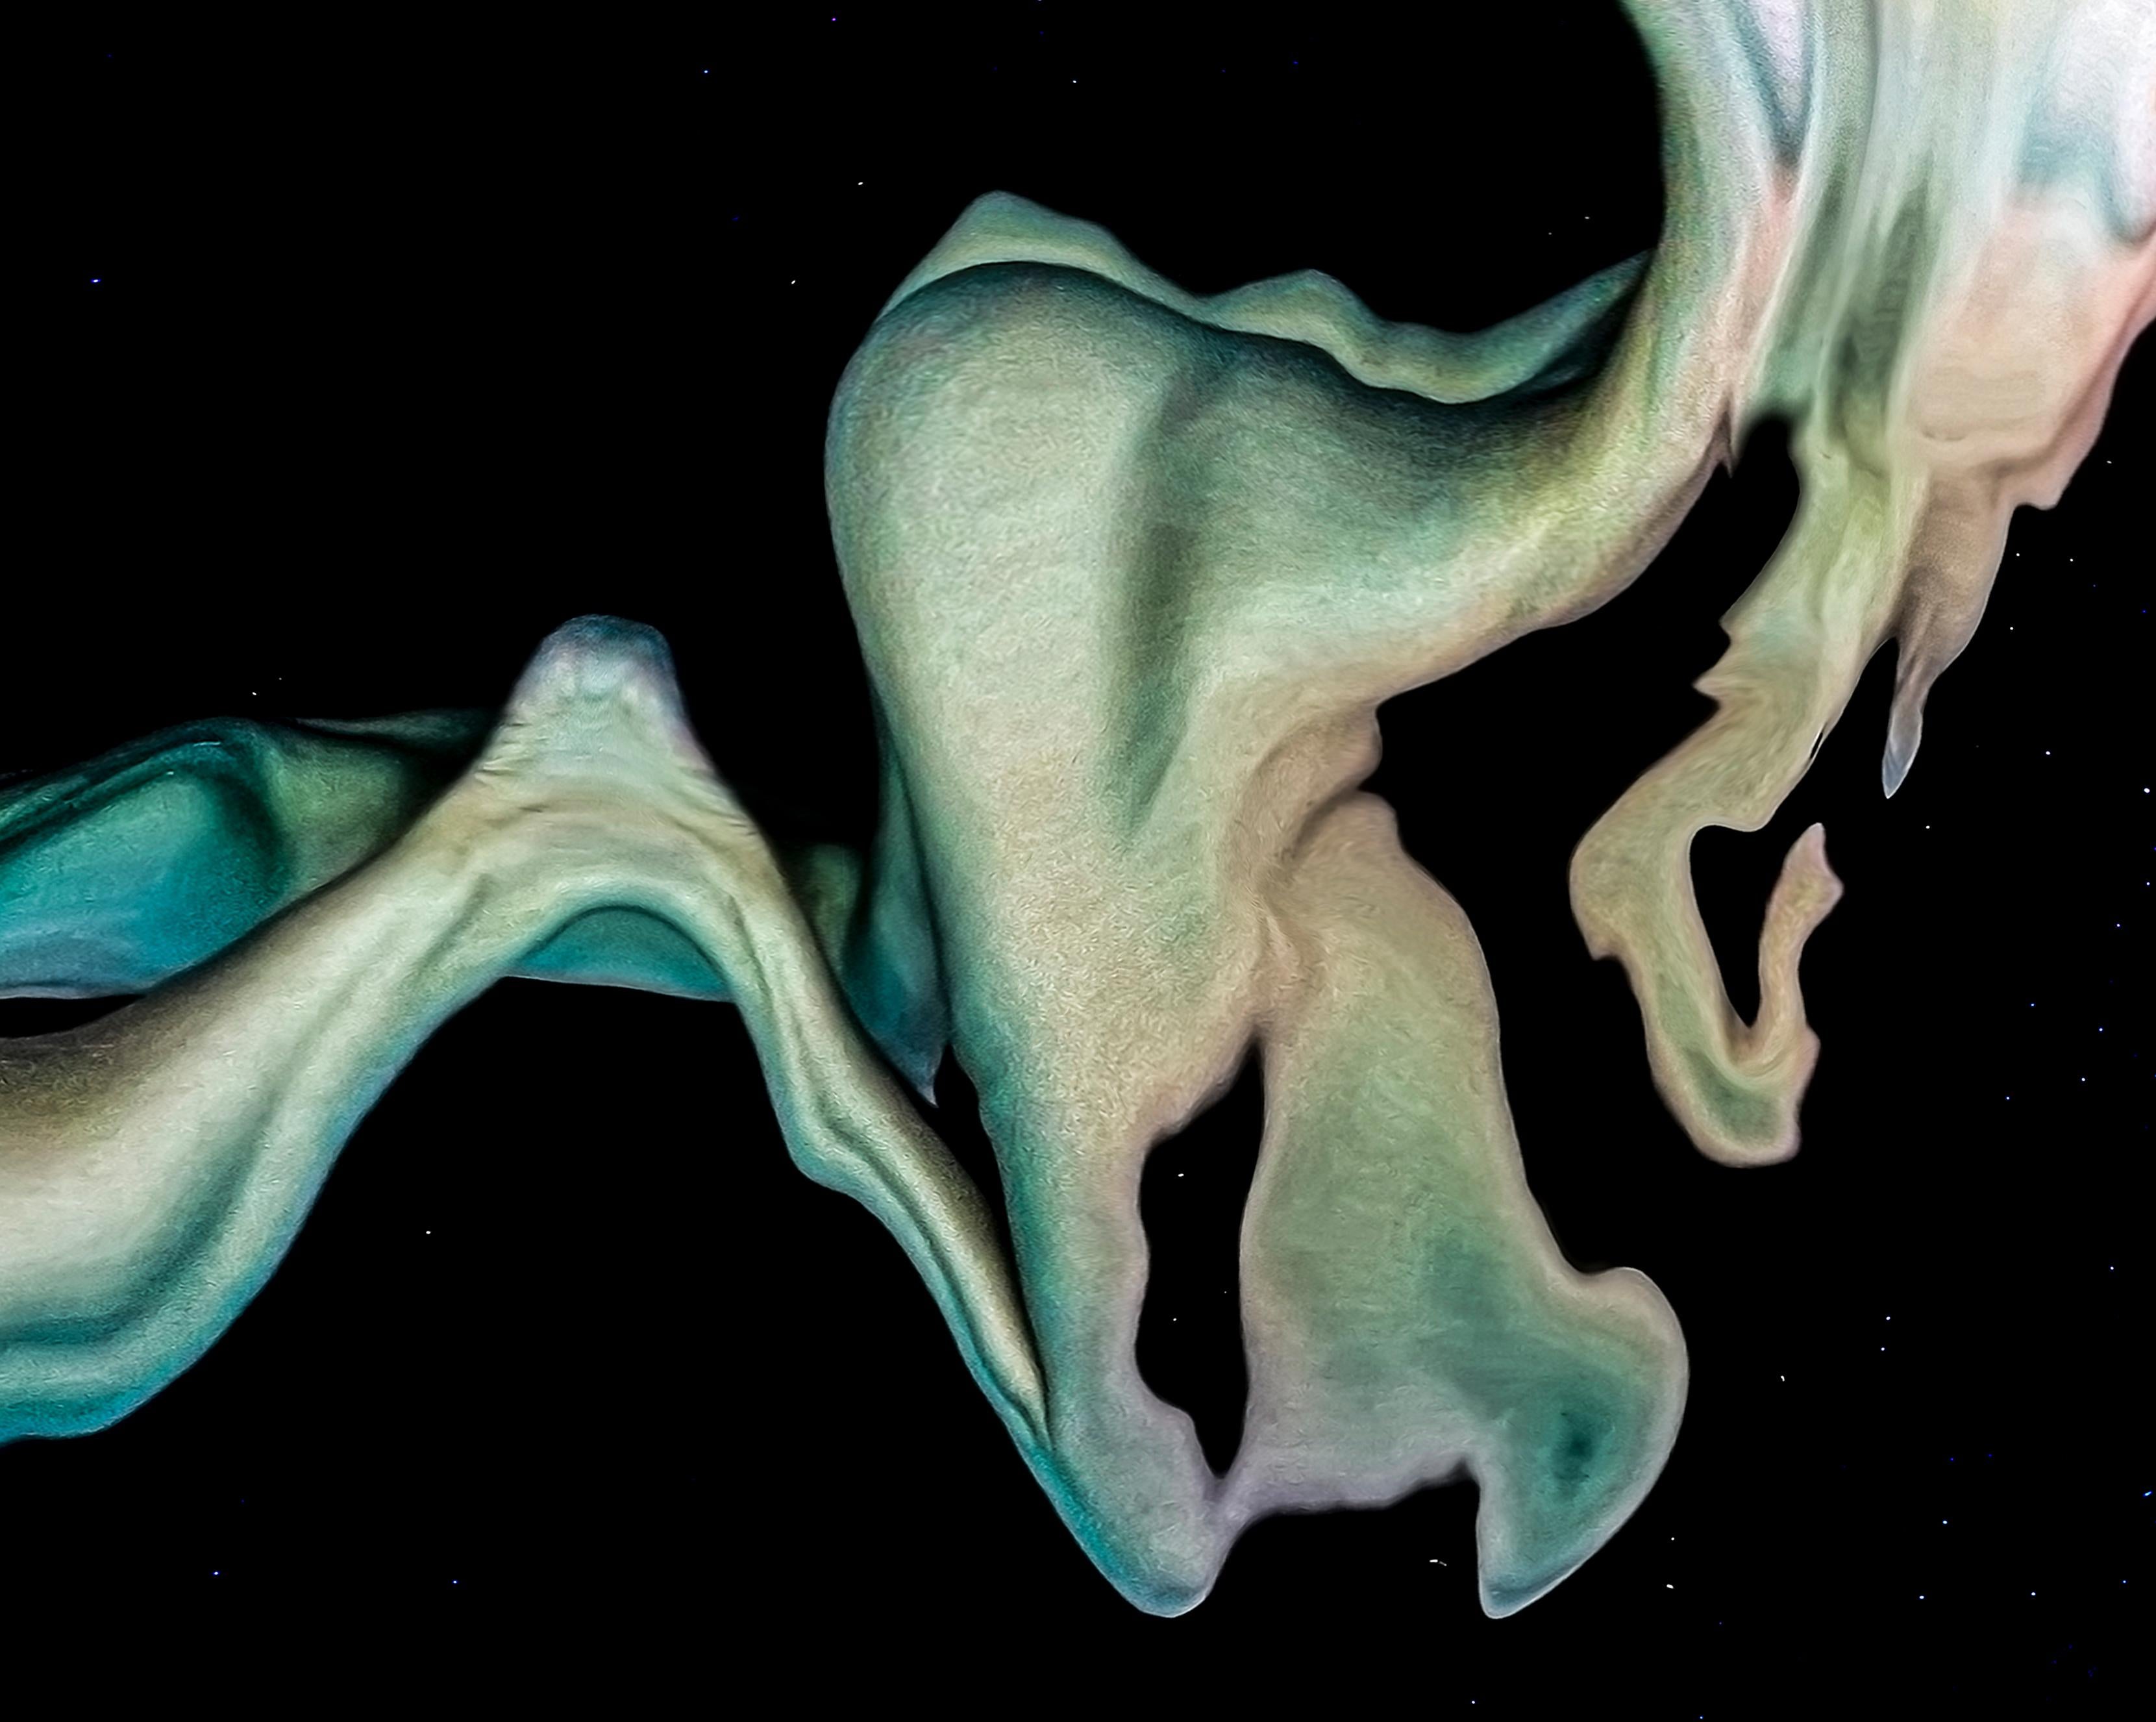 Möbius Mermaid - photographie de nu sous-marine - REFLECTIONS - pigment d'archive - Noir Abstract Photograph par Alex Sher